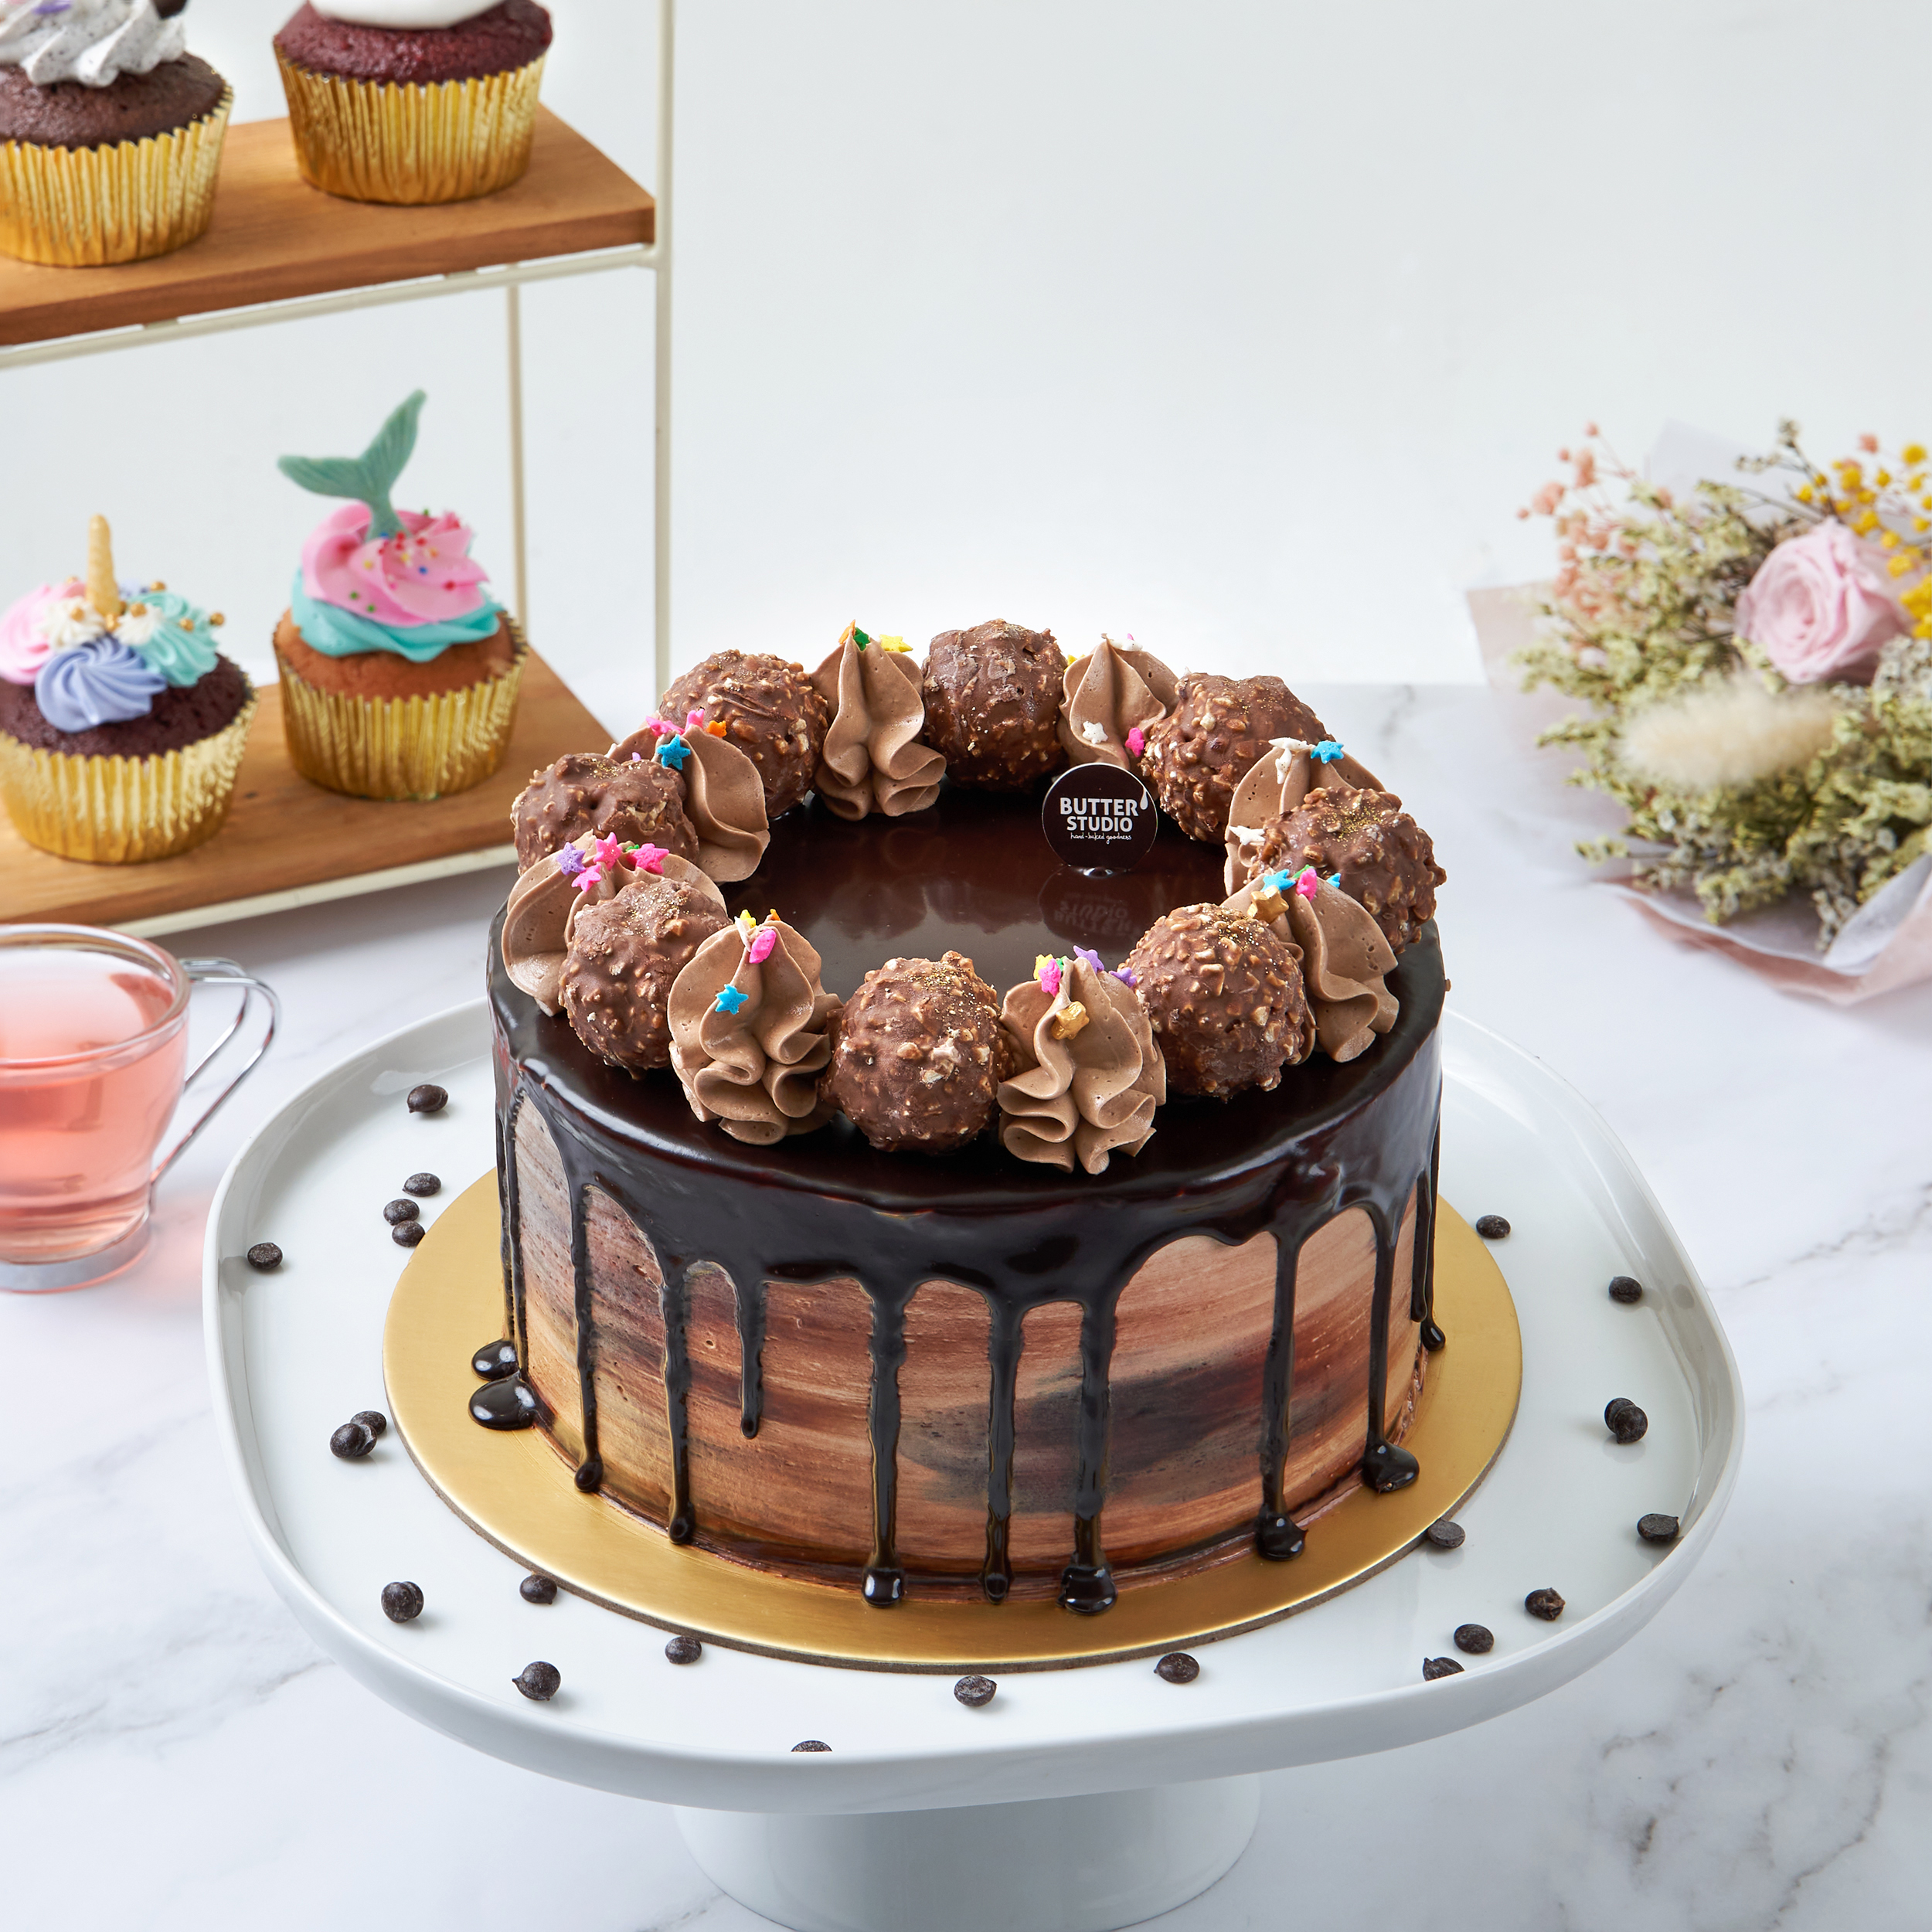 Chocolate Cakes Designs for Birthdays | DoorstepCake